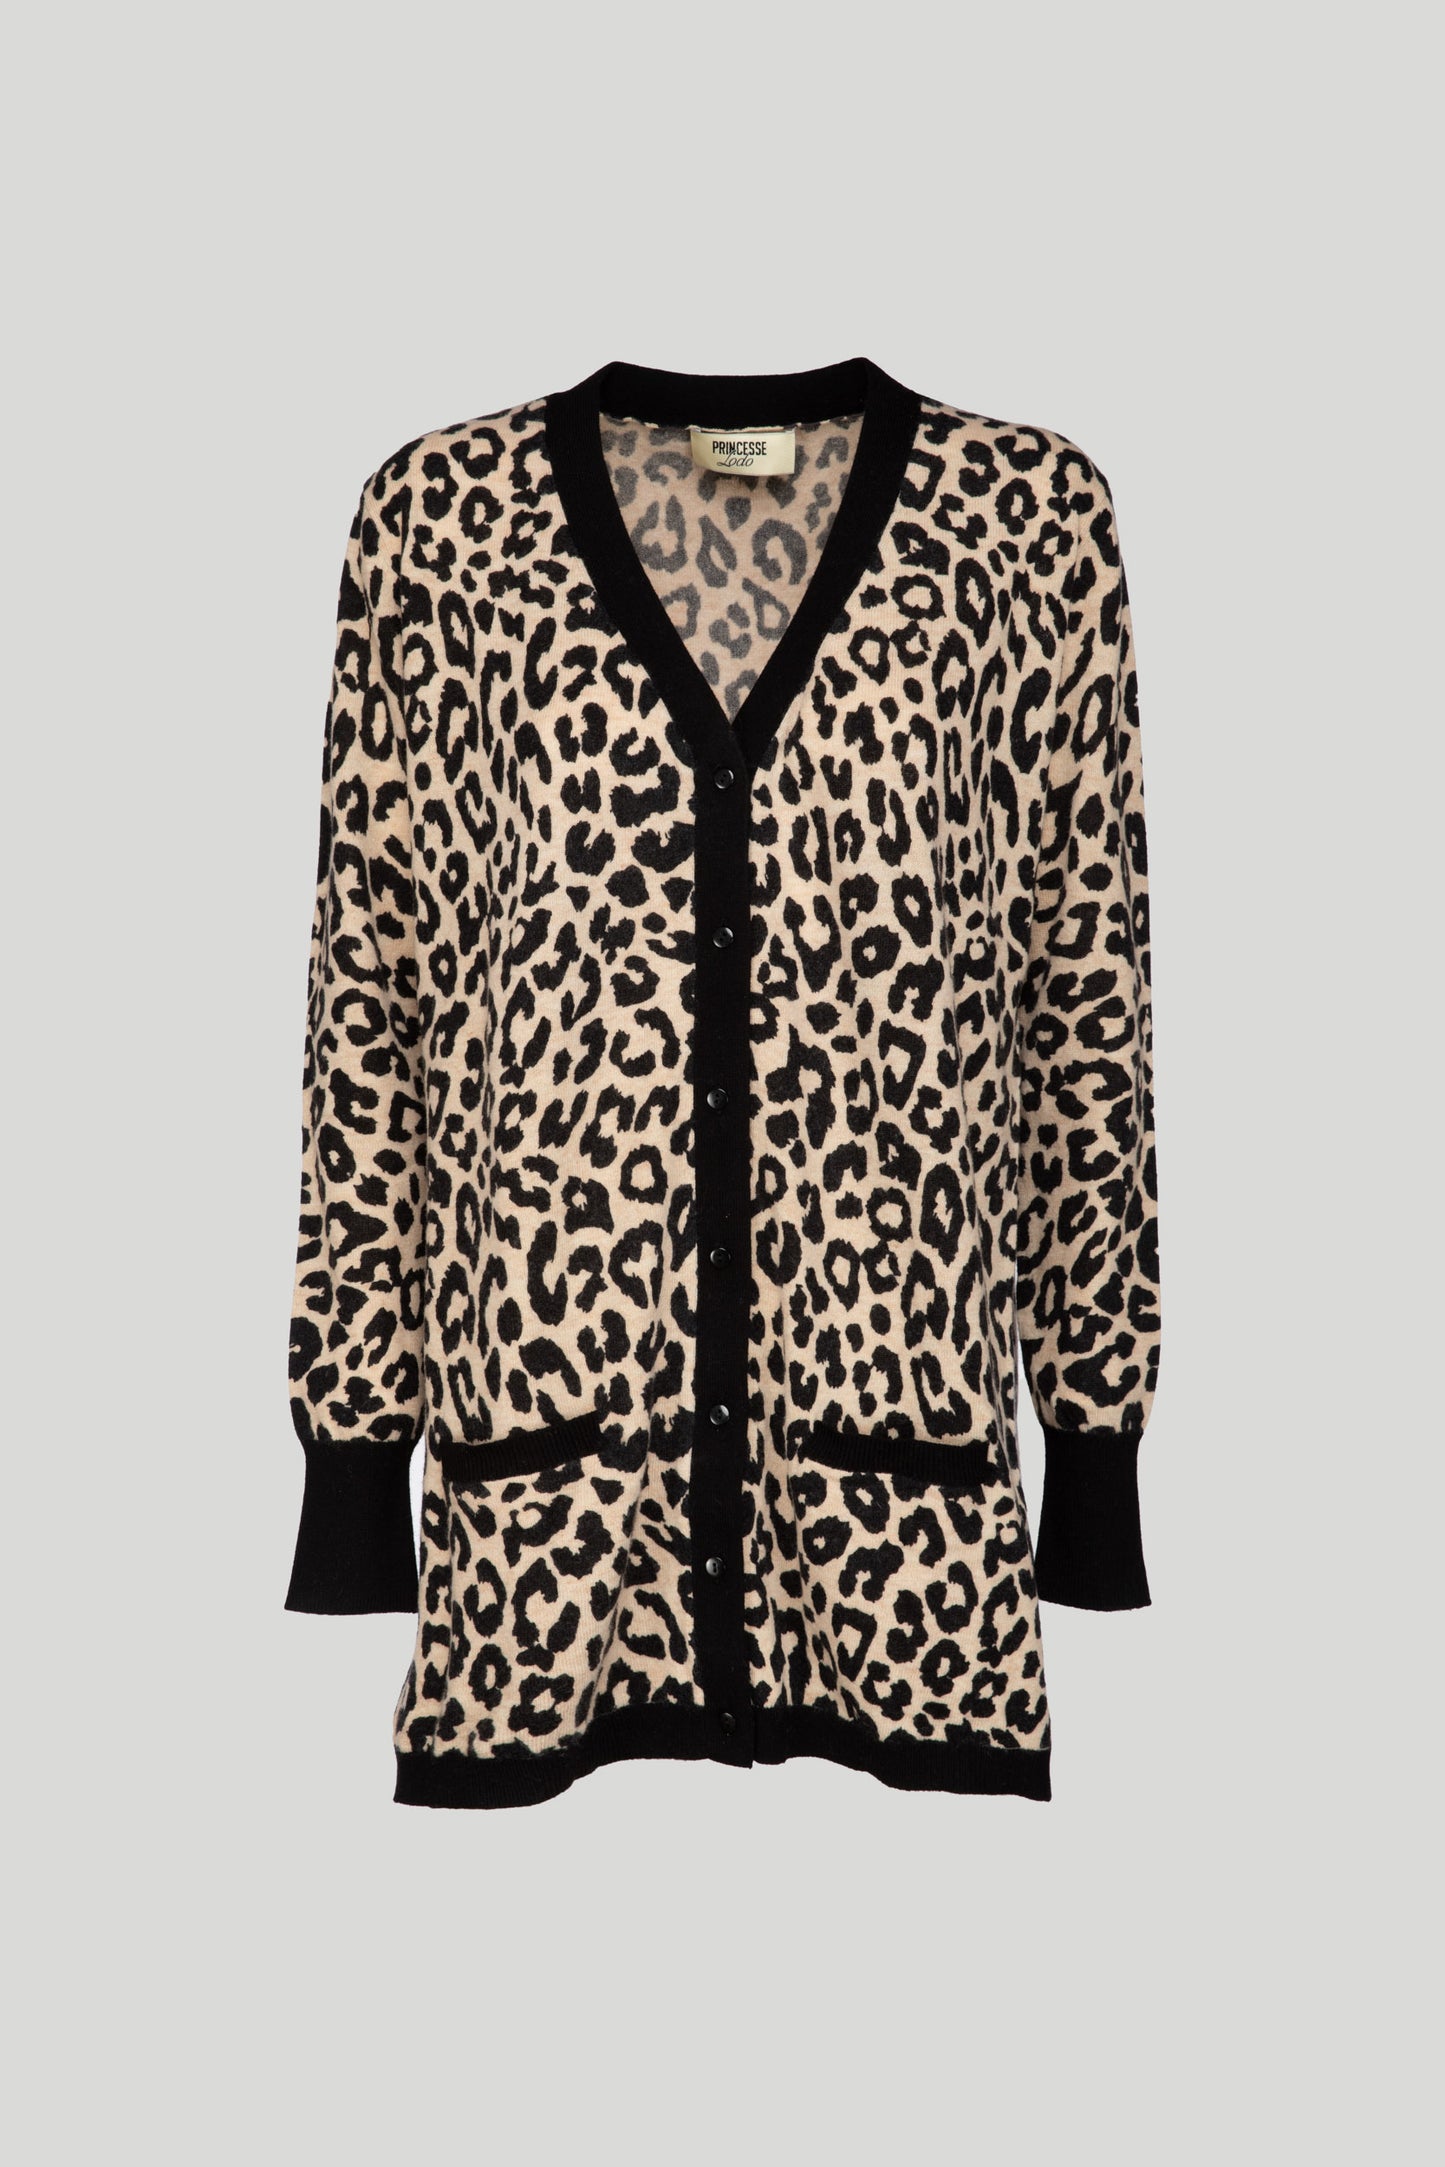 PRINCESSE LODO Leopard Sweater